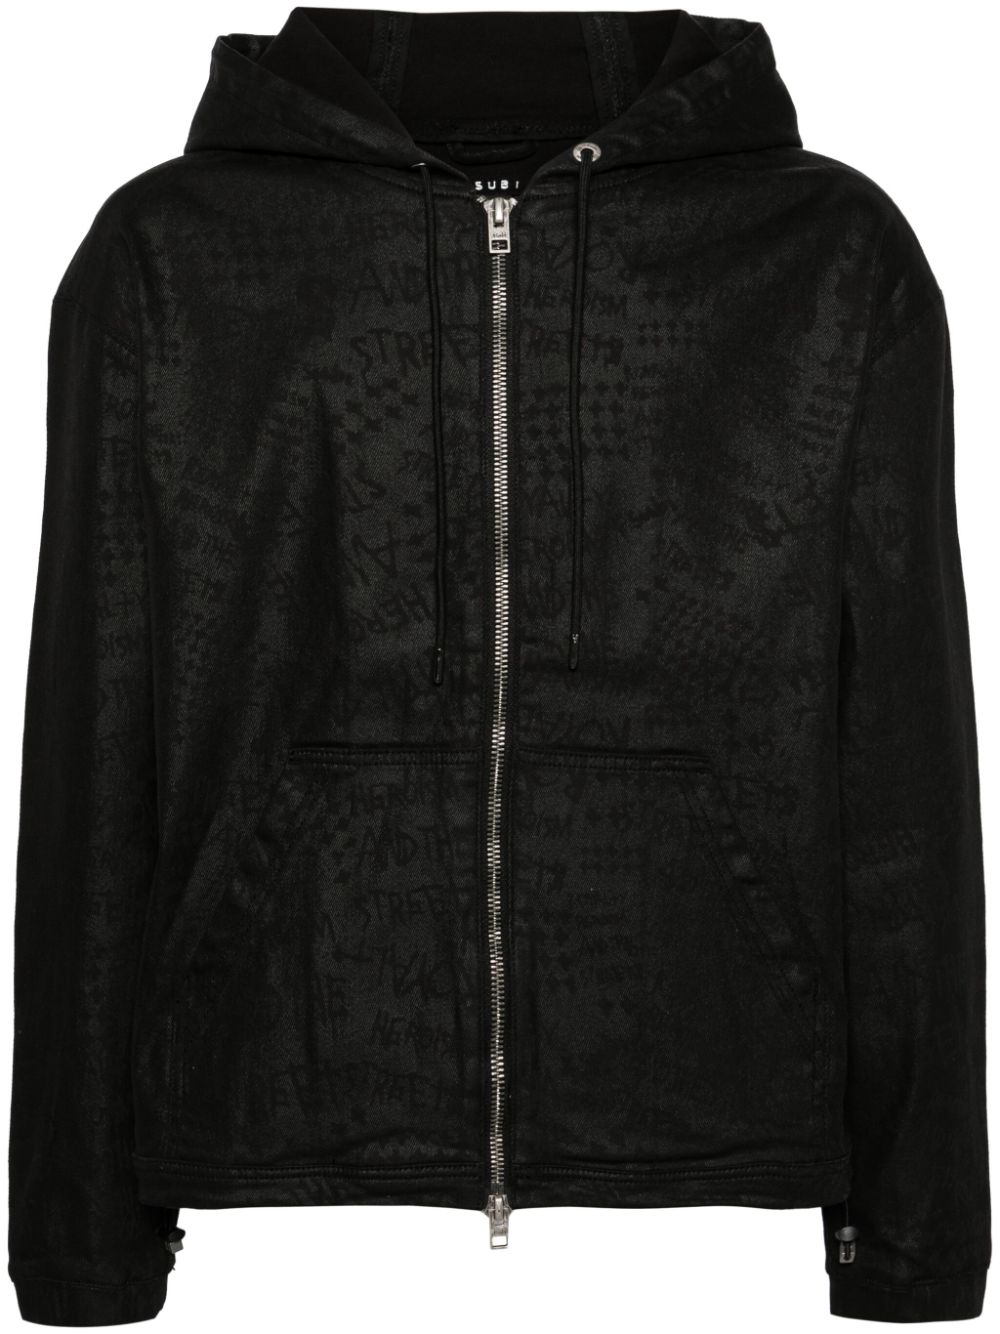 Ksubi jacquard hooded jacket - Black